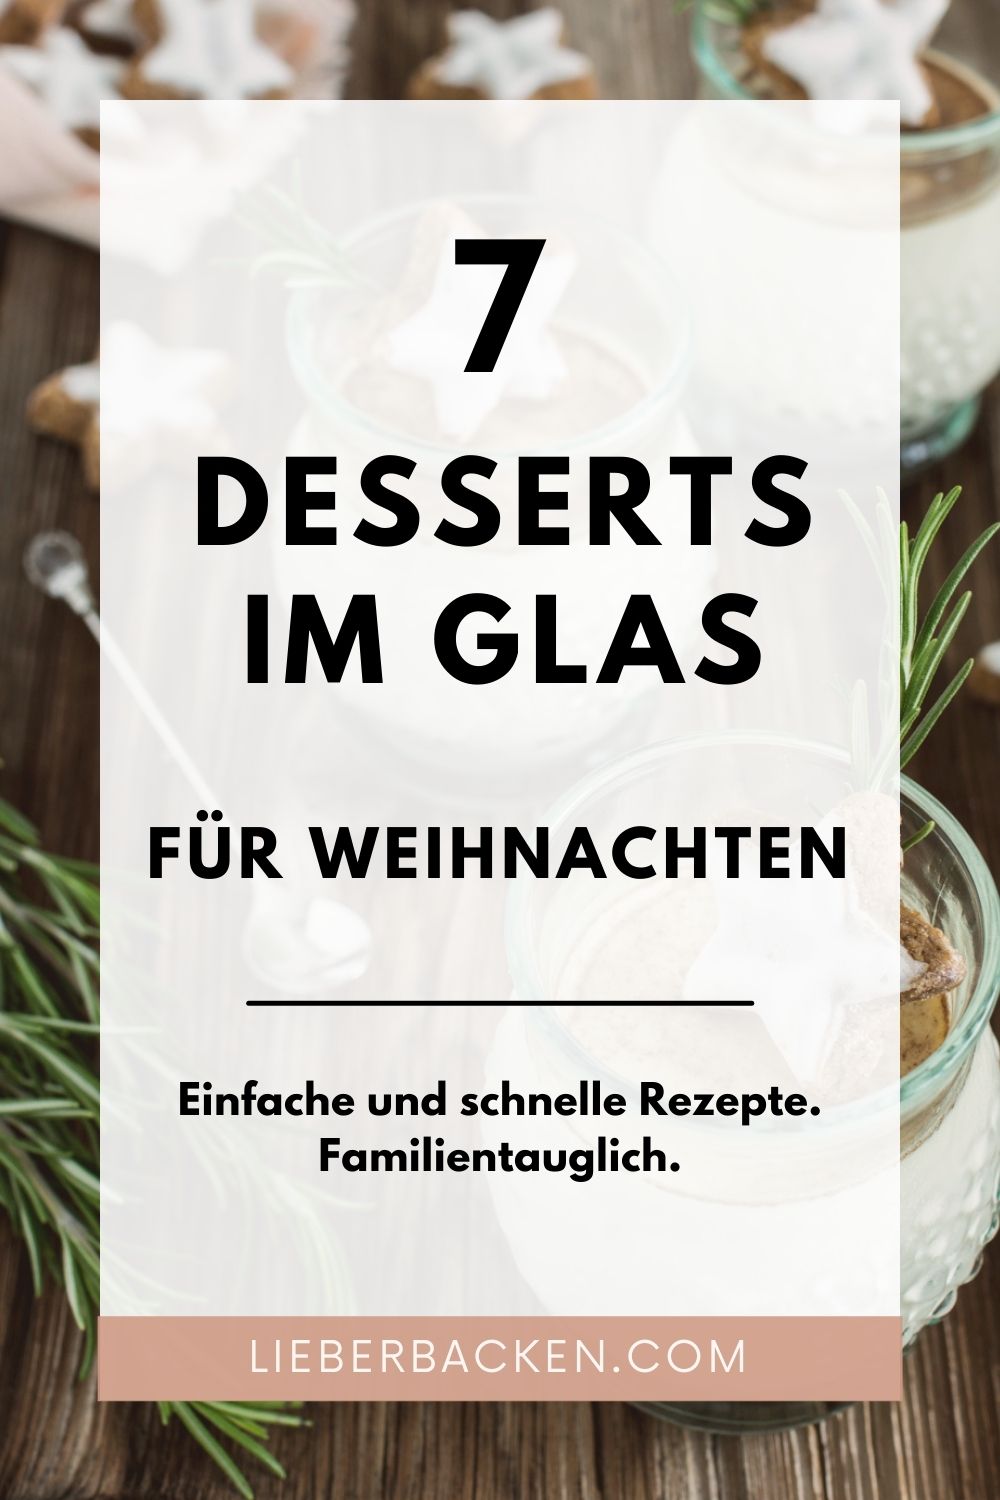 7 Desserts im Glas für Weihnachten